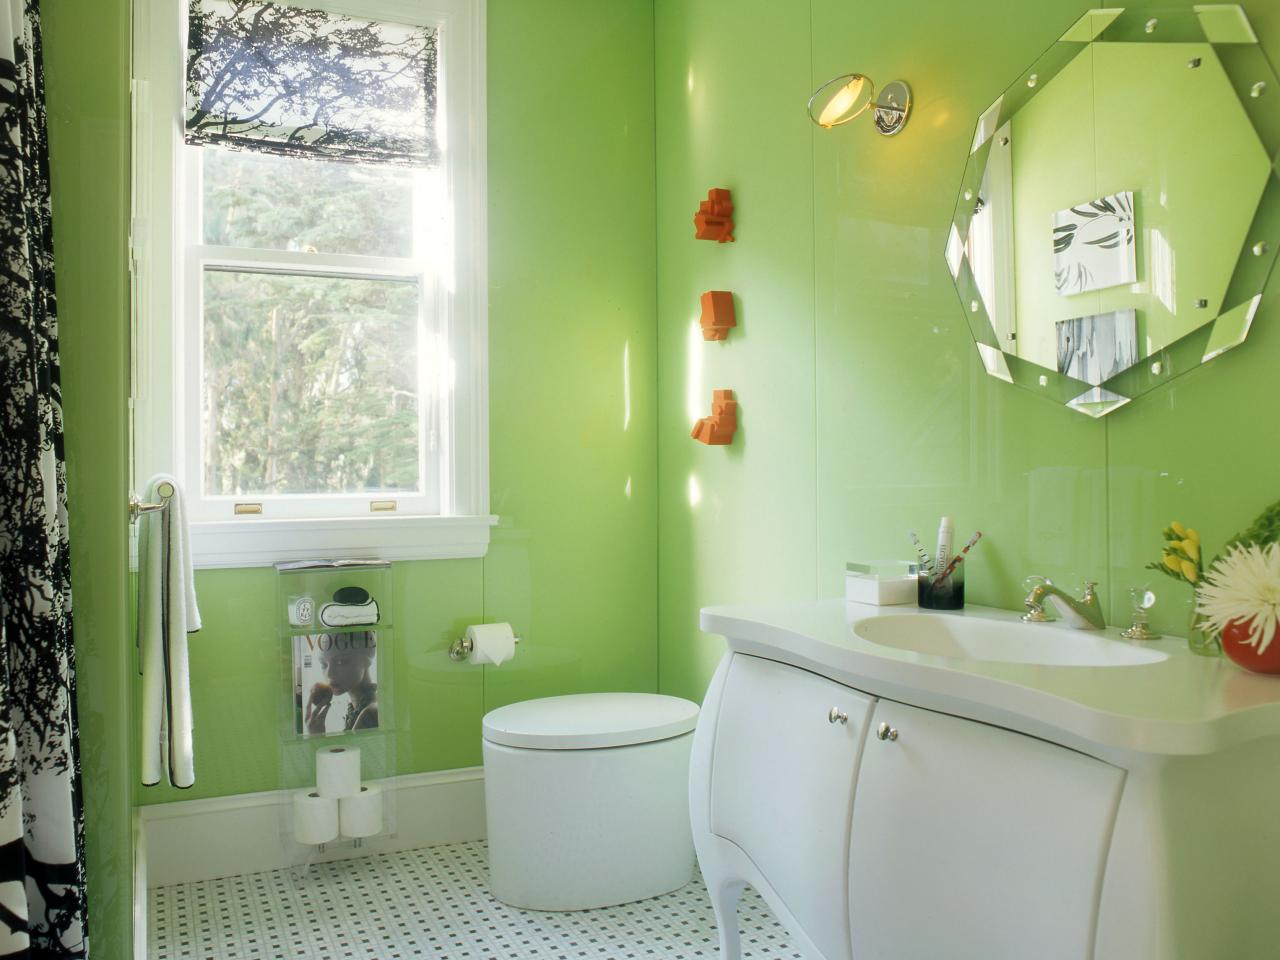 Cool Teen Bathrooms | Bathroom Ideas & Design with Vanities, Tile ...